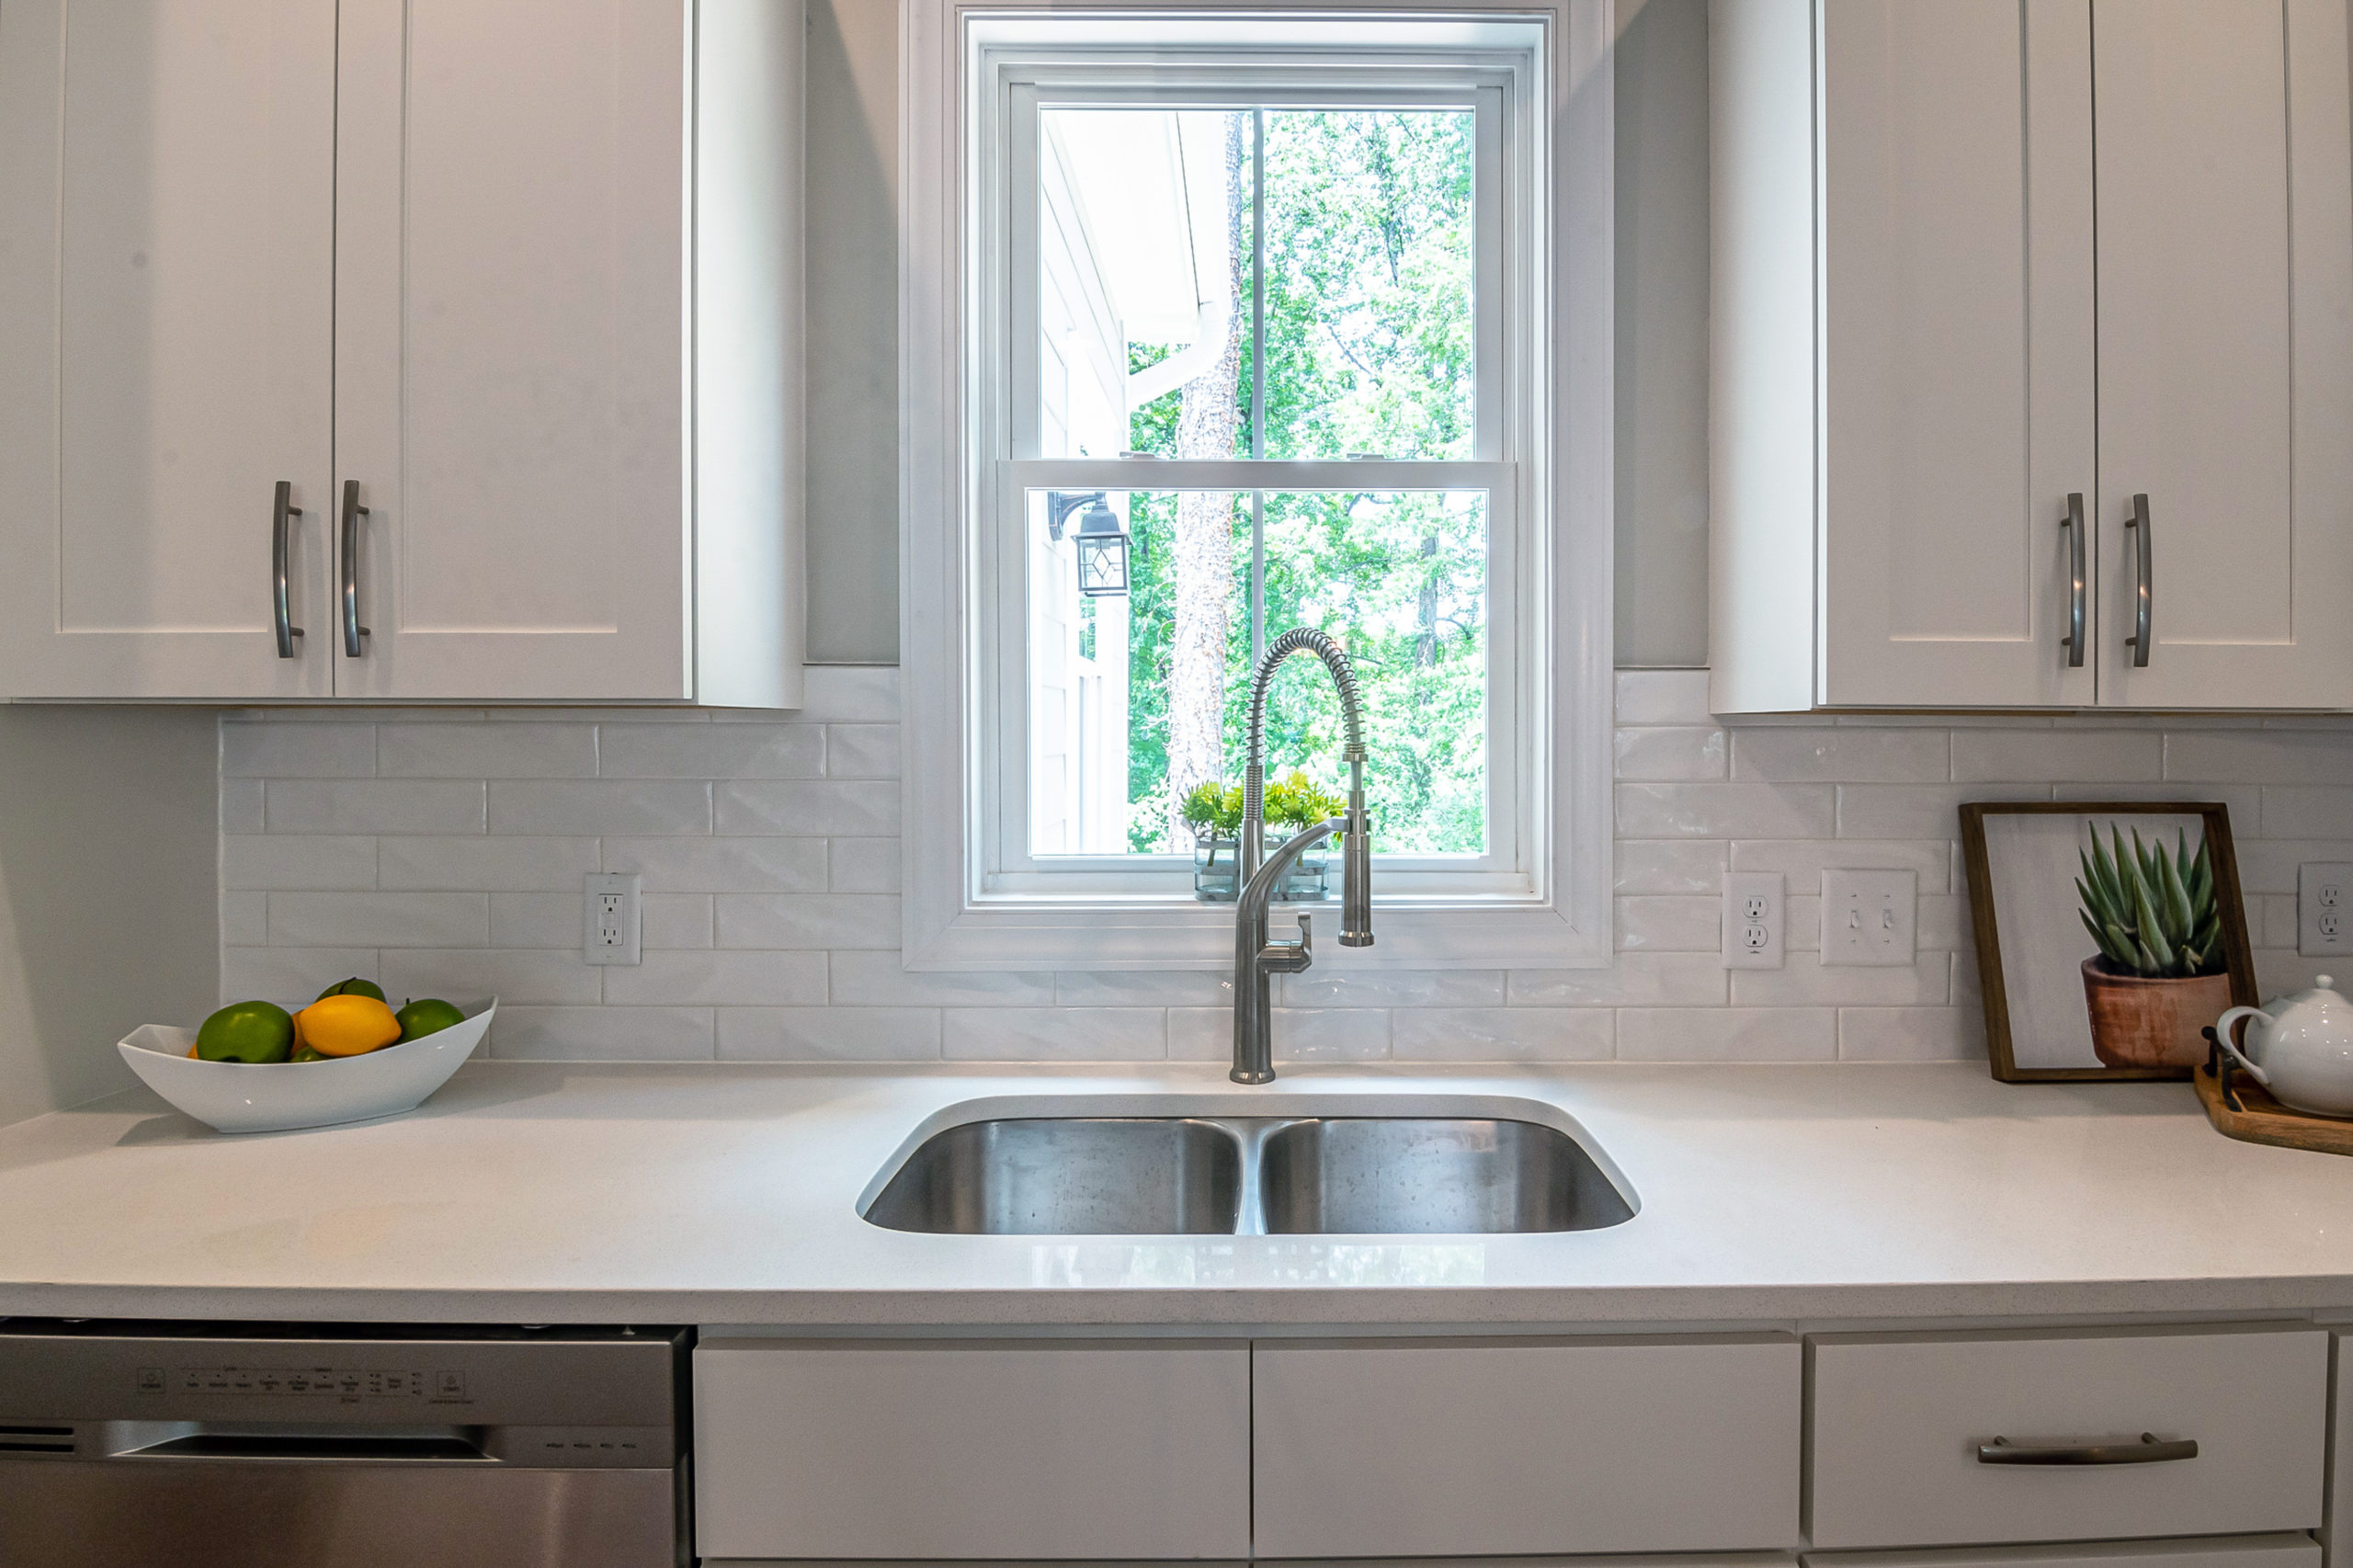 Bright, clean kitchen with a new window behind kitchen sink.